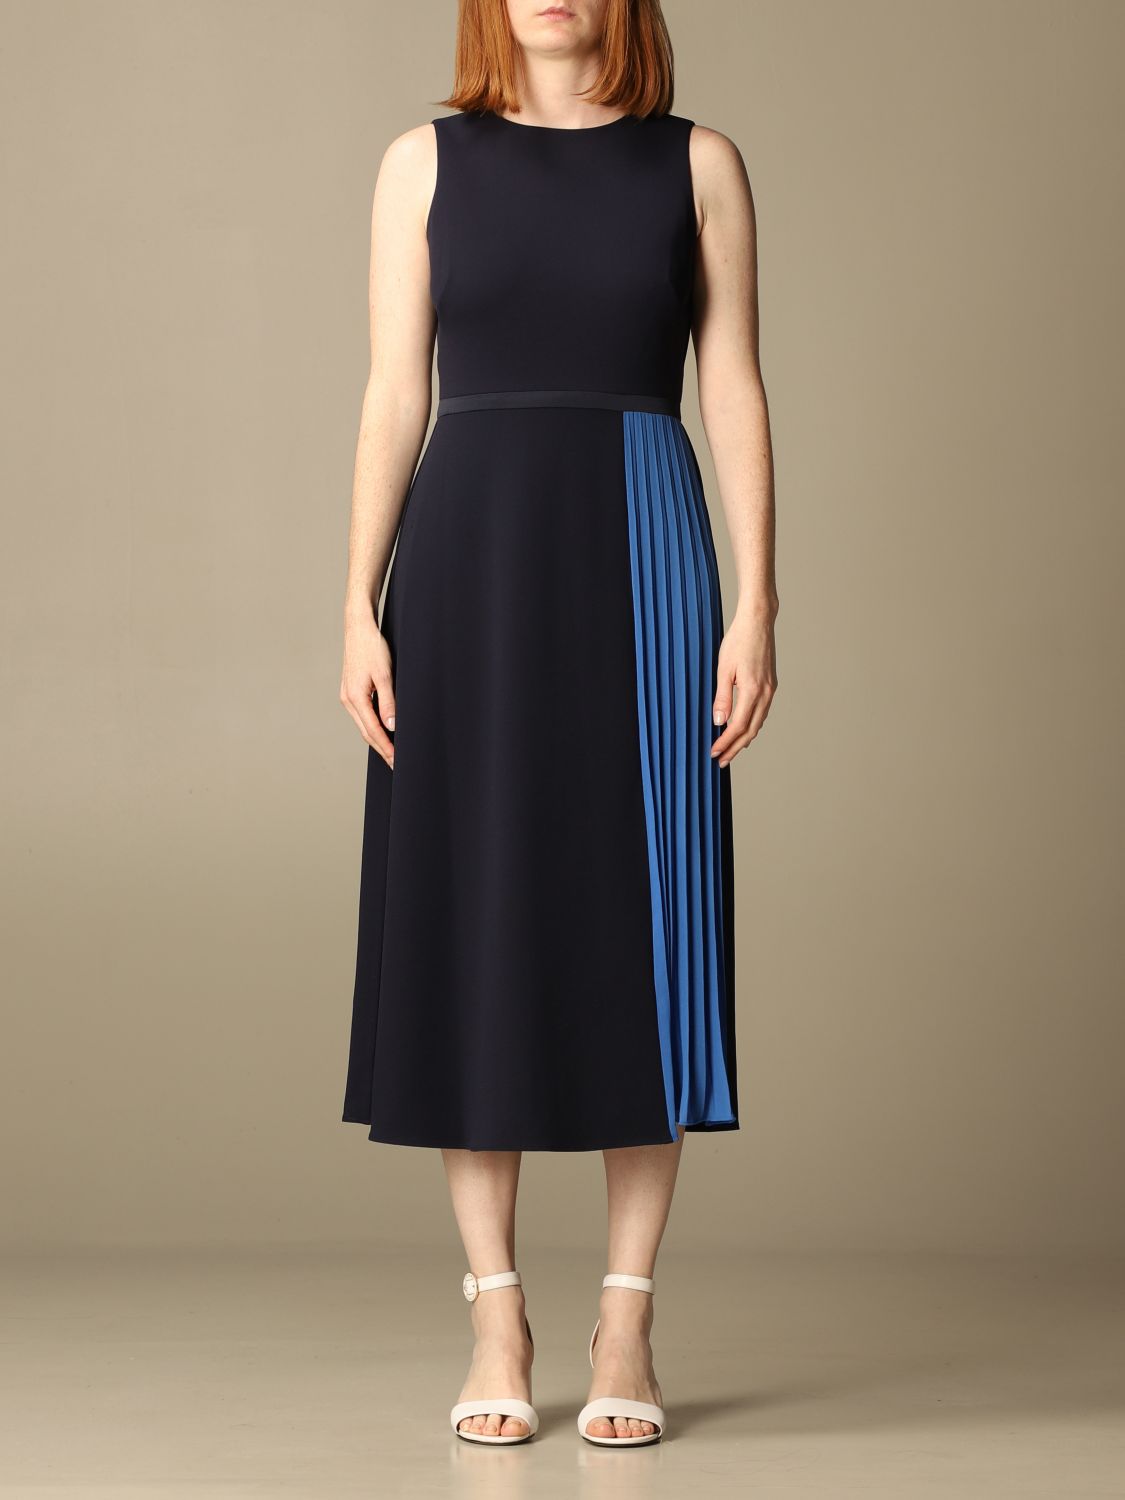 Lauren Ralph Lauren Outlet: midi dress with pleated panels - Blue | Lauren  Ralph Lauren dress 250830157 online on 